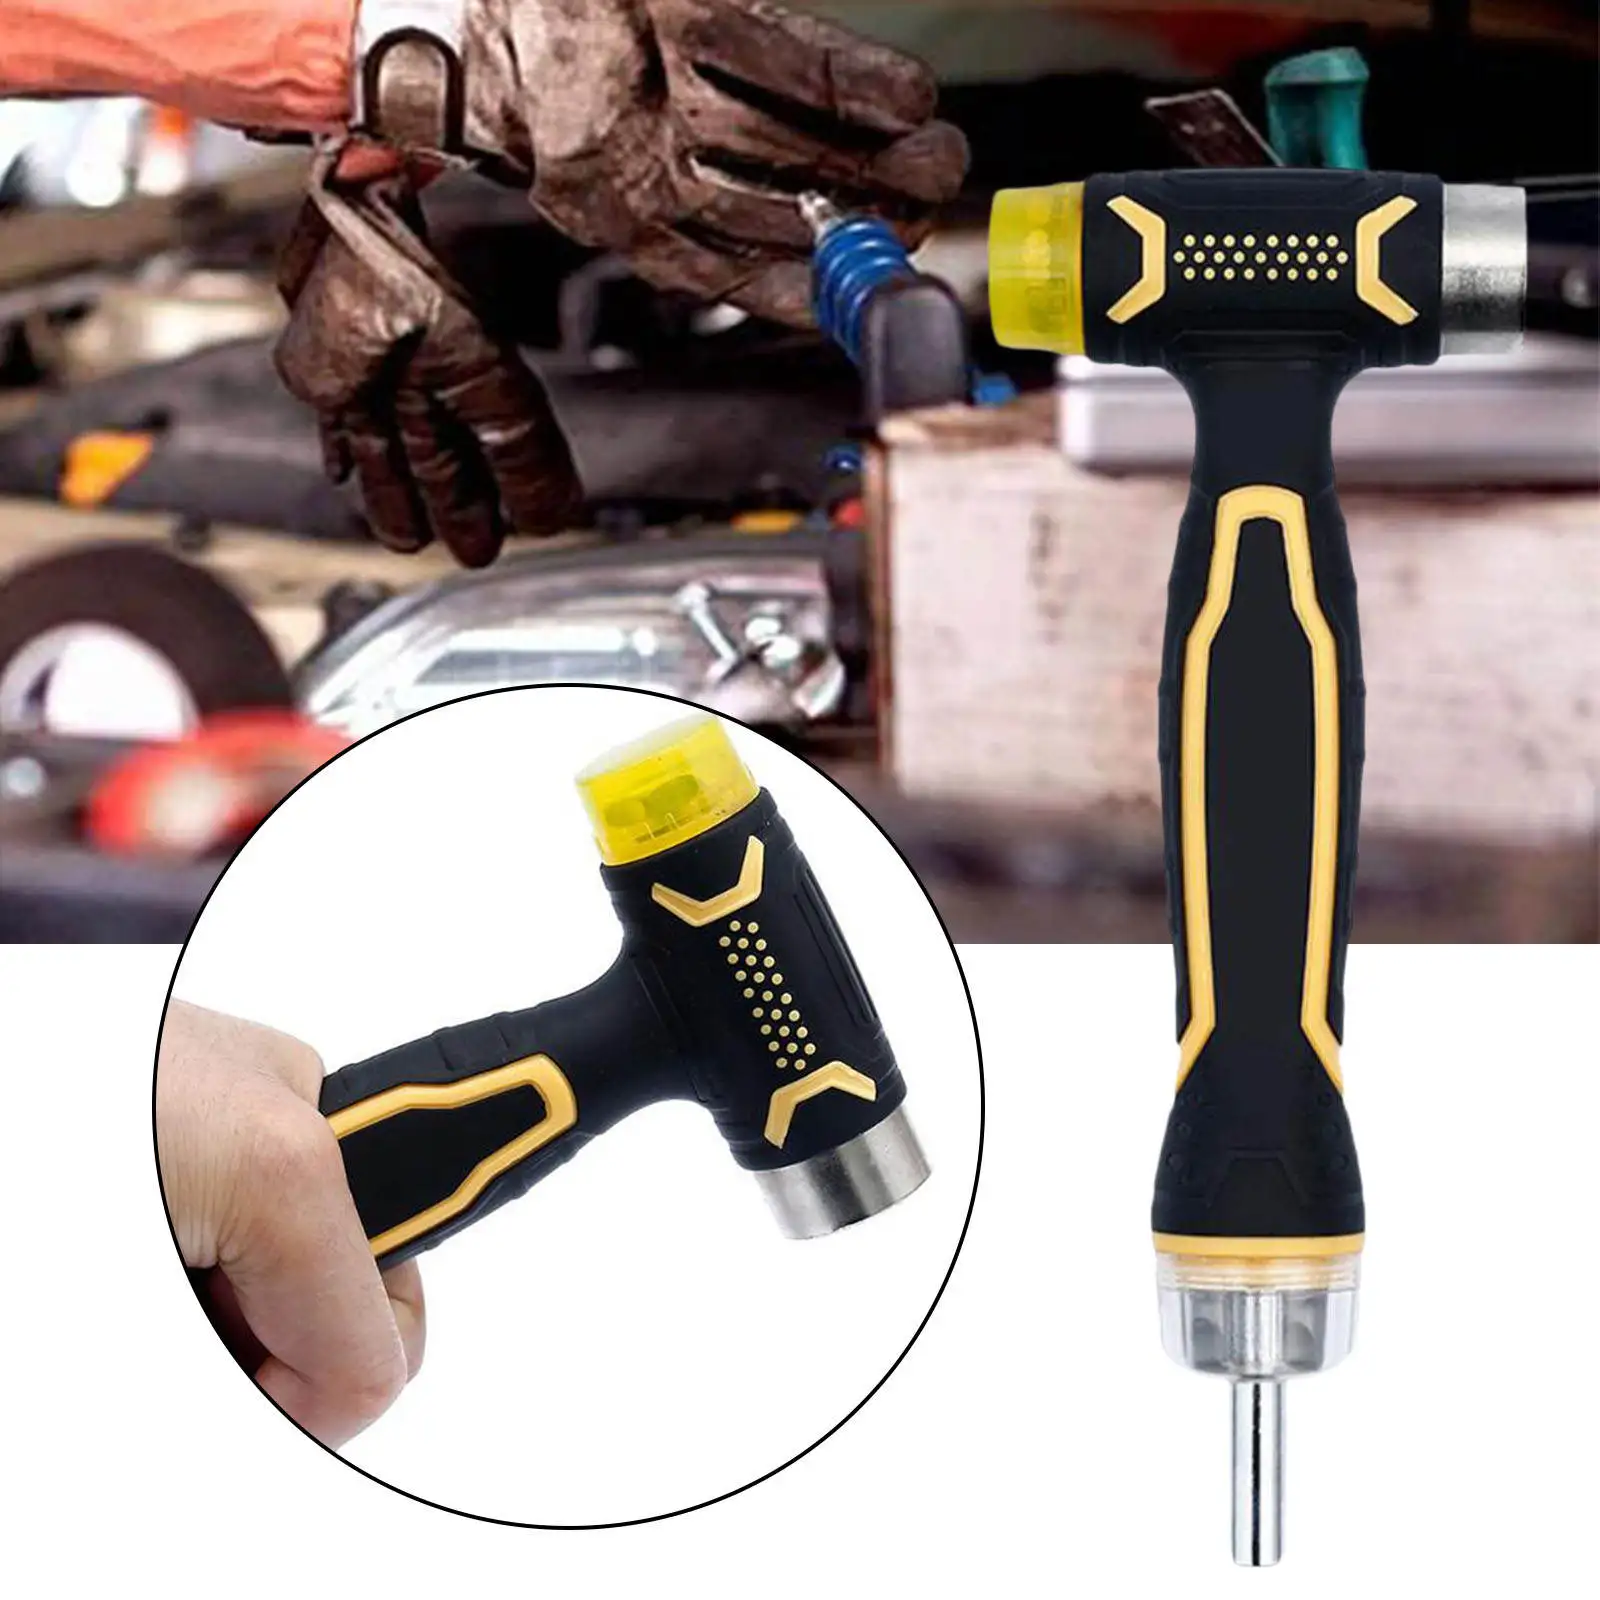 Mini Hammer Hardware Tool Repairing Tool DIY Multipurpose for Auto Repair Camping Woodworking Outdoor